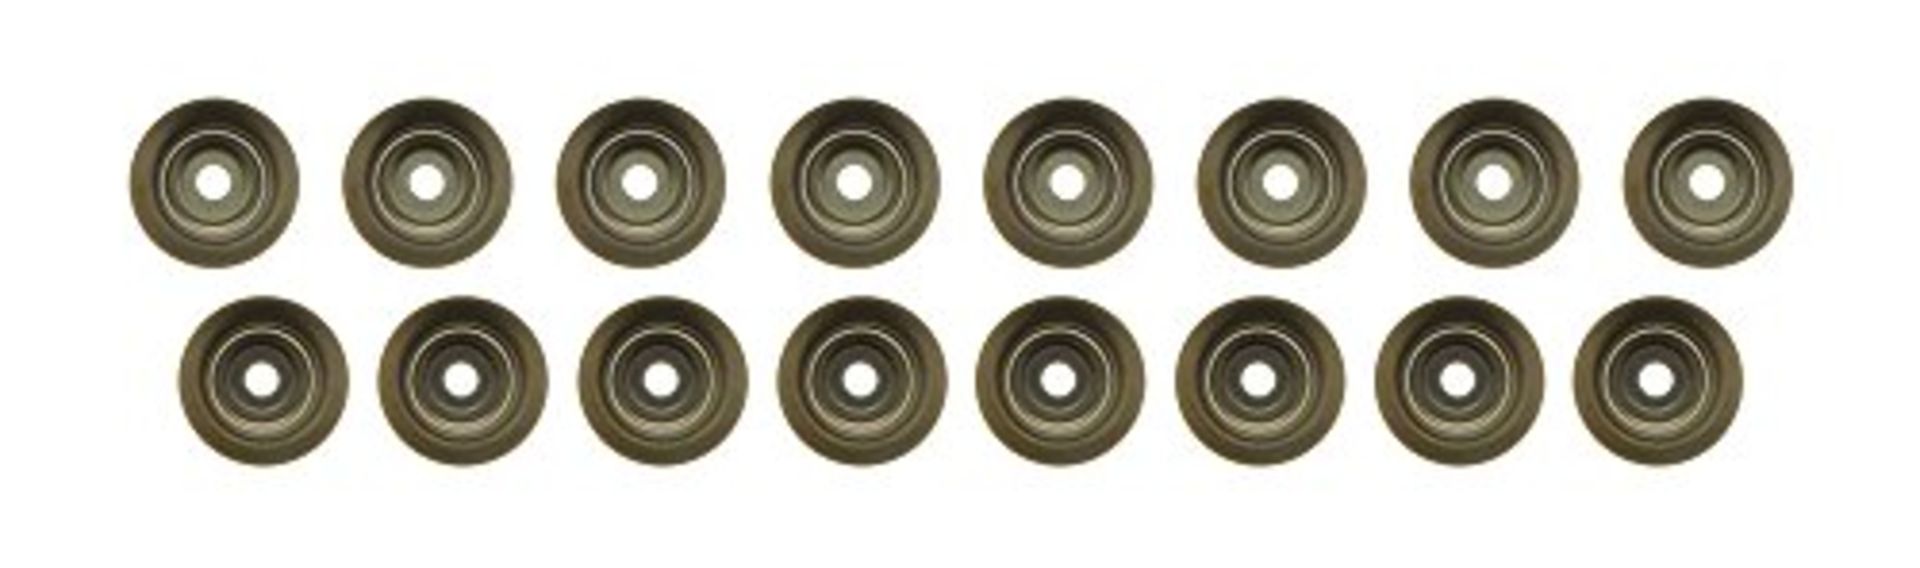 Ajusa 57043100 Seal Set valve stem